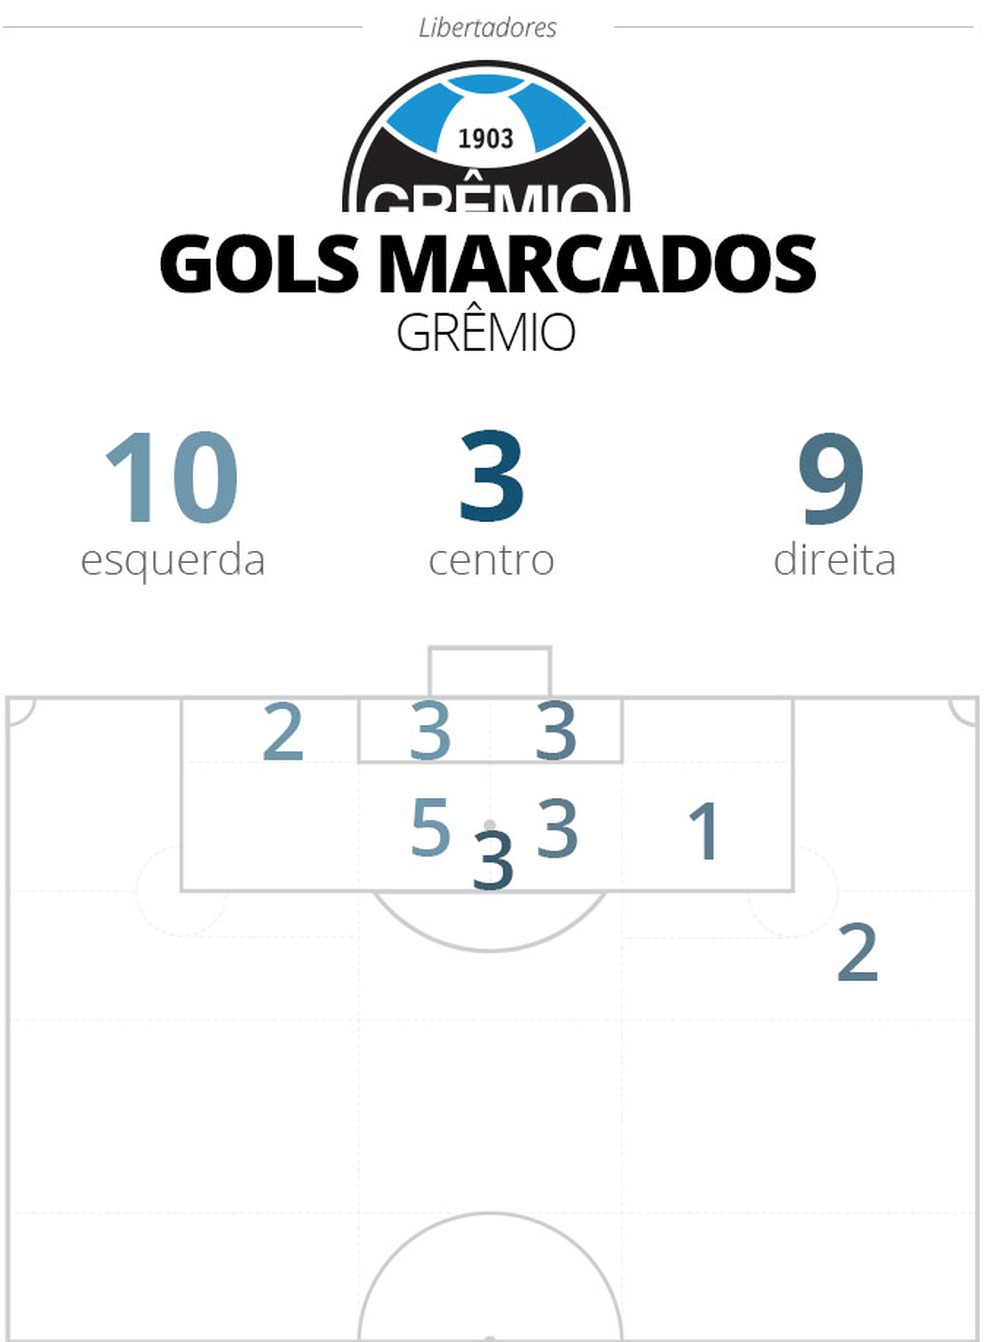 Local do campo dos gols marcados pelo Grêmio na Libertadores — Foto: Infoesporte